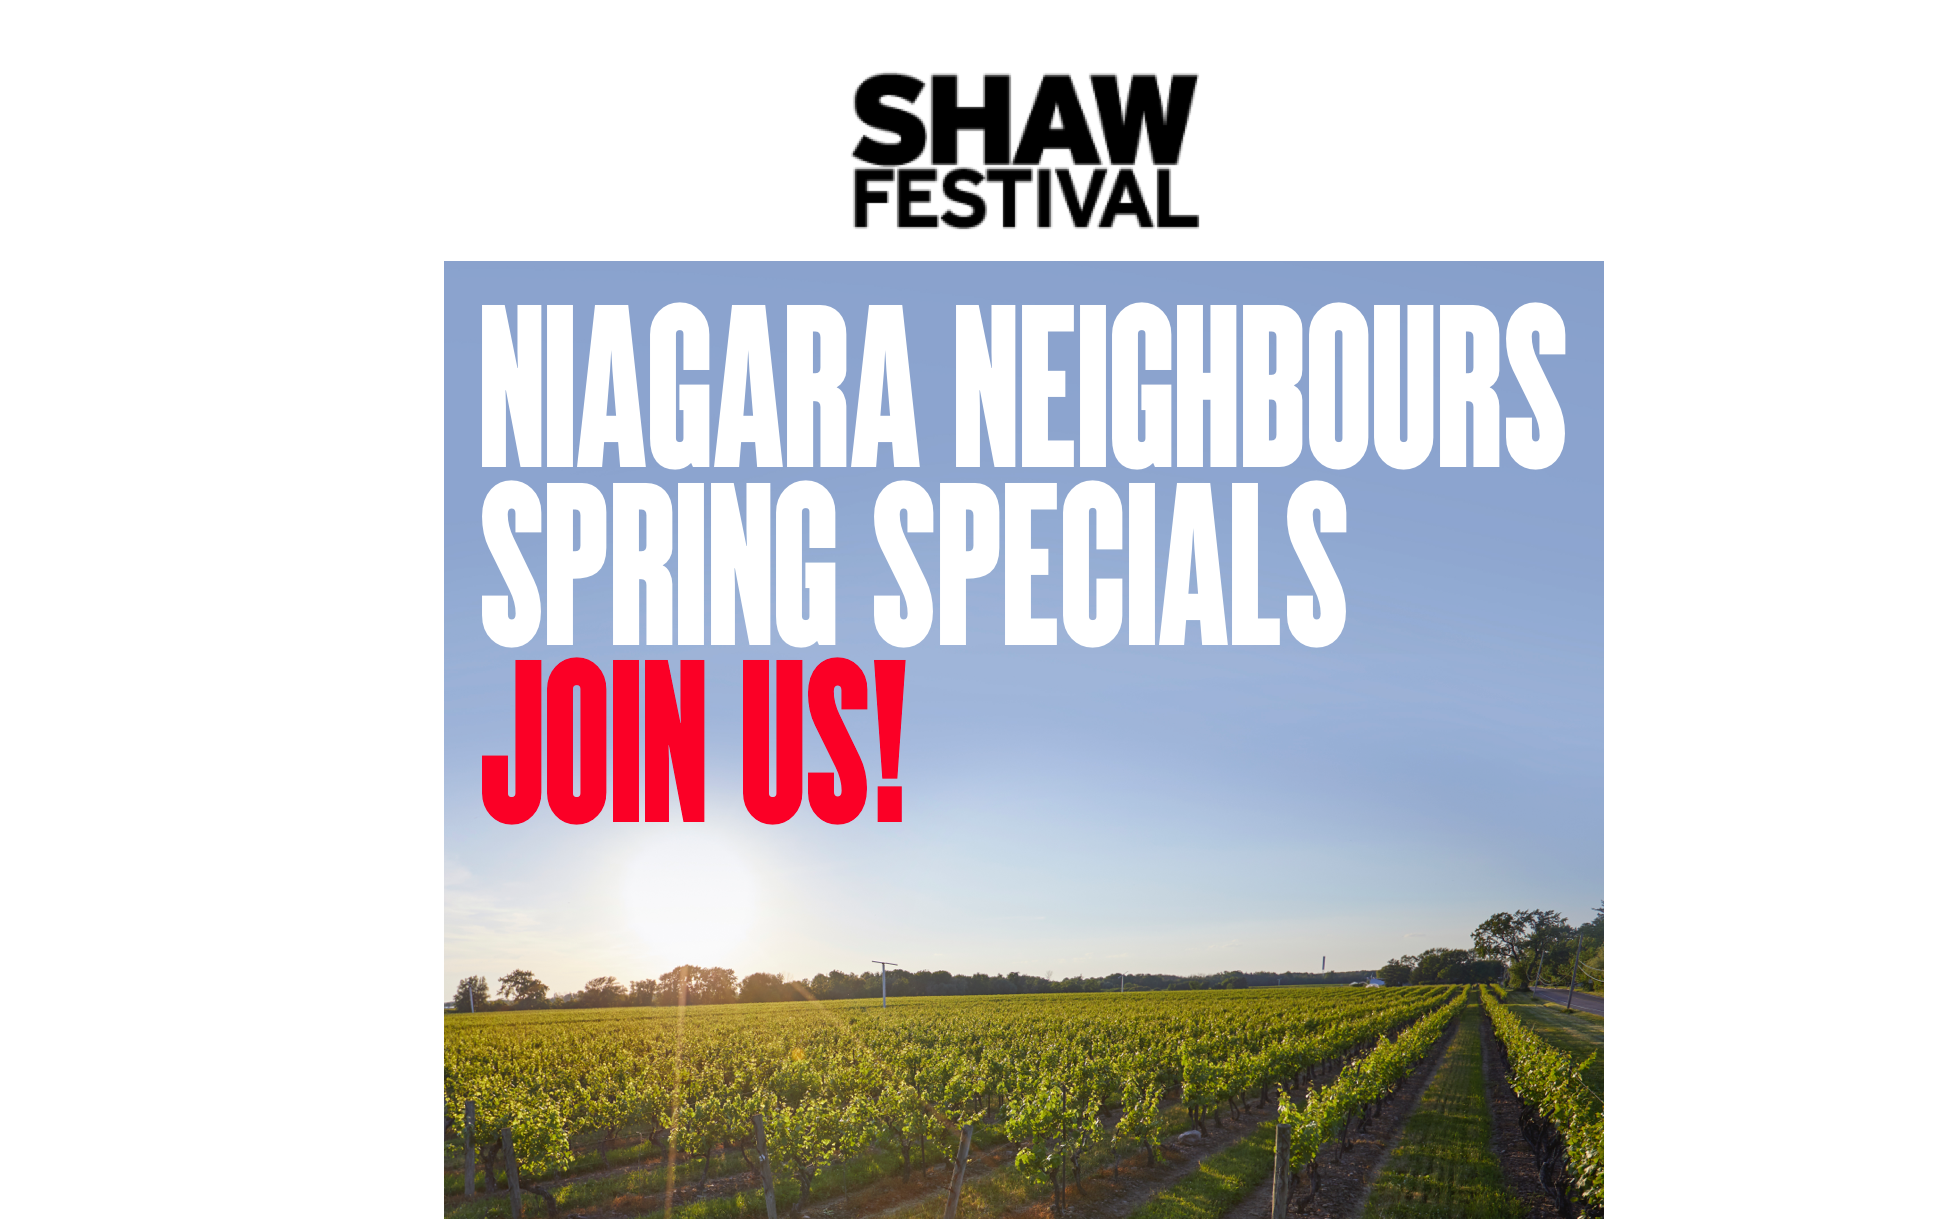 Shaw Festival: Niagara Neighbours Spring Specials!